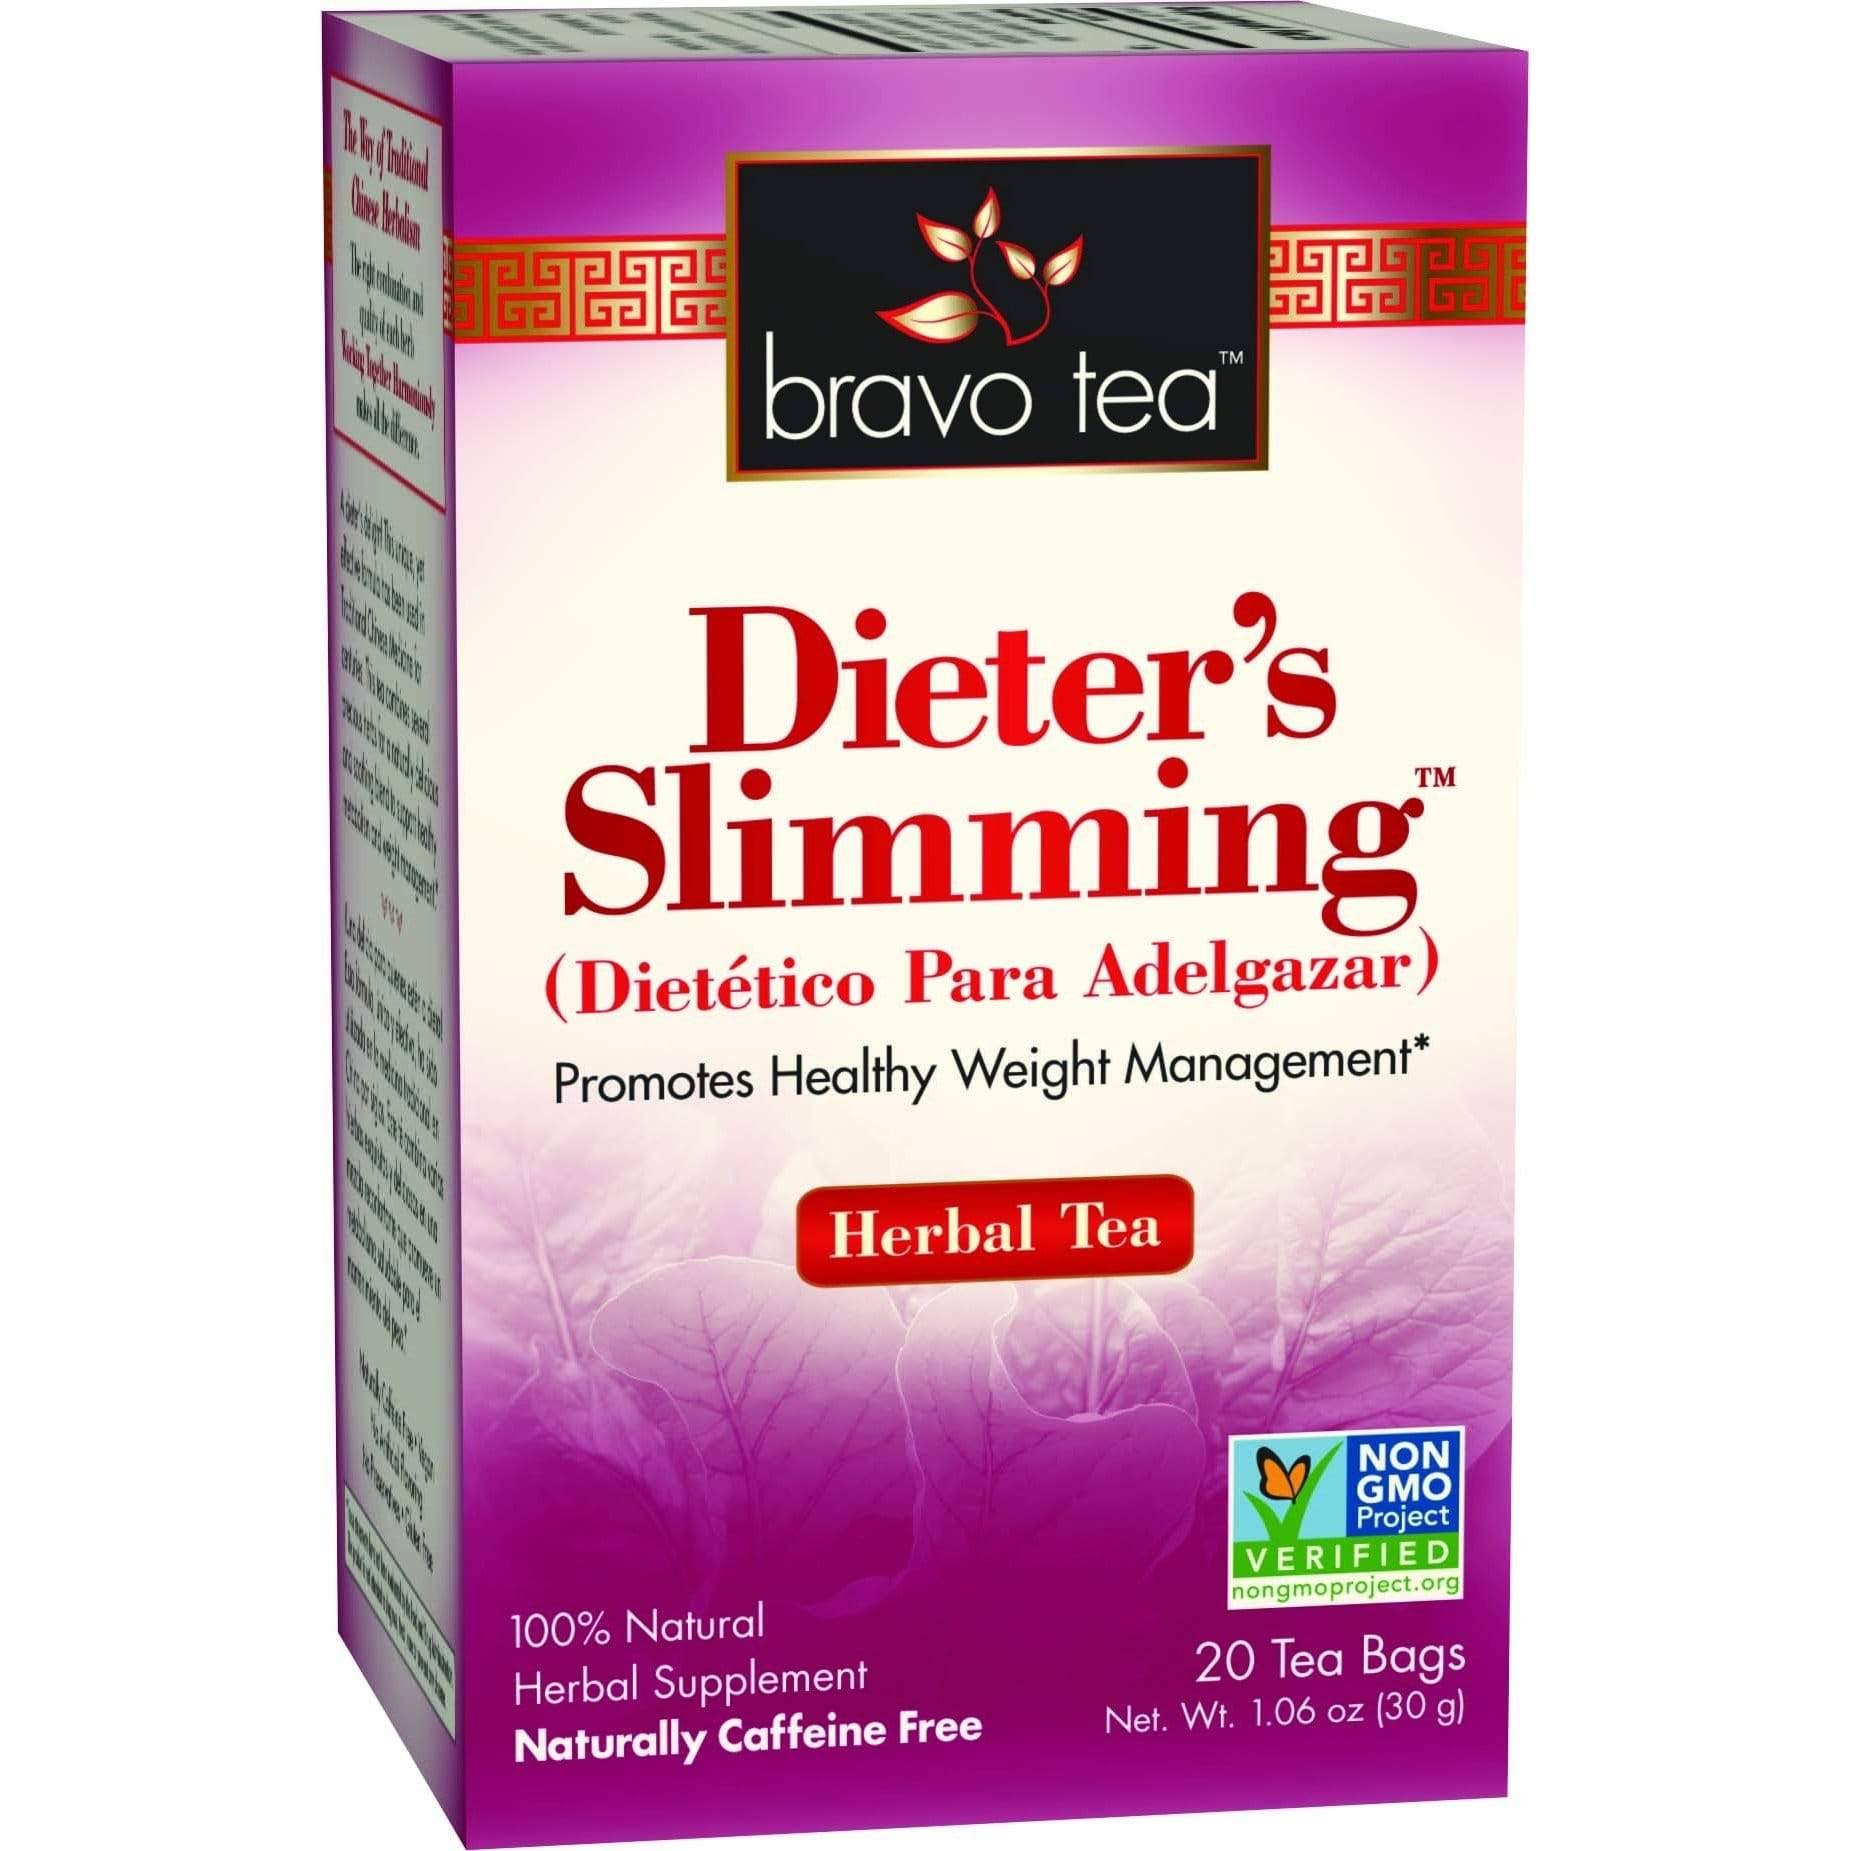 Bravo Tea Dieter's Slimming Herbal Tea